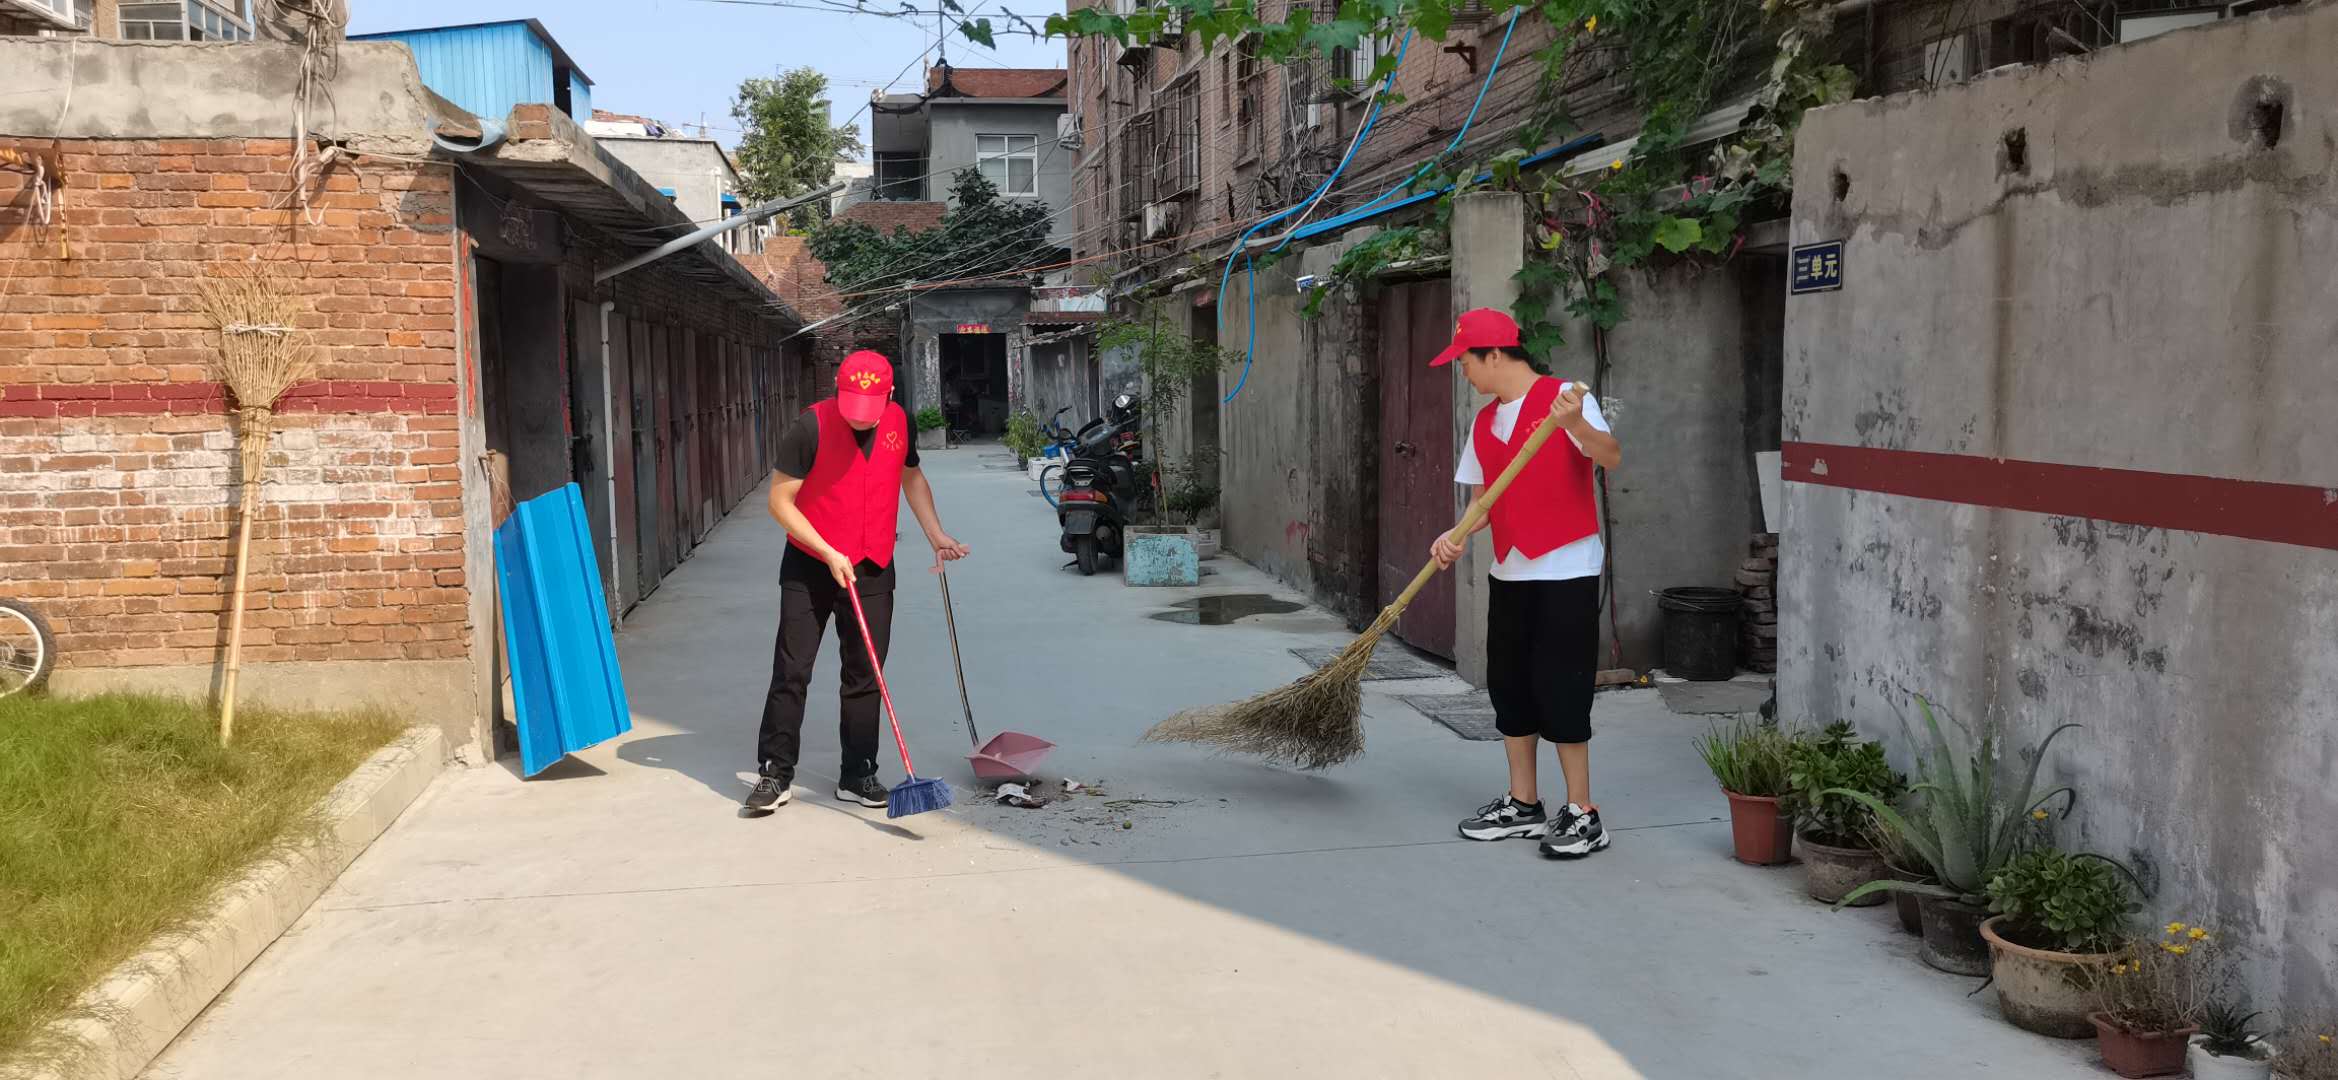 土木工程学院组织学生志愿者打扫教室卫生，为新学期开学做准备-土木工程学院